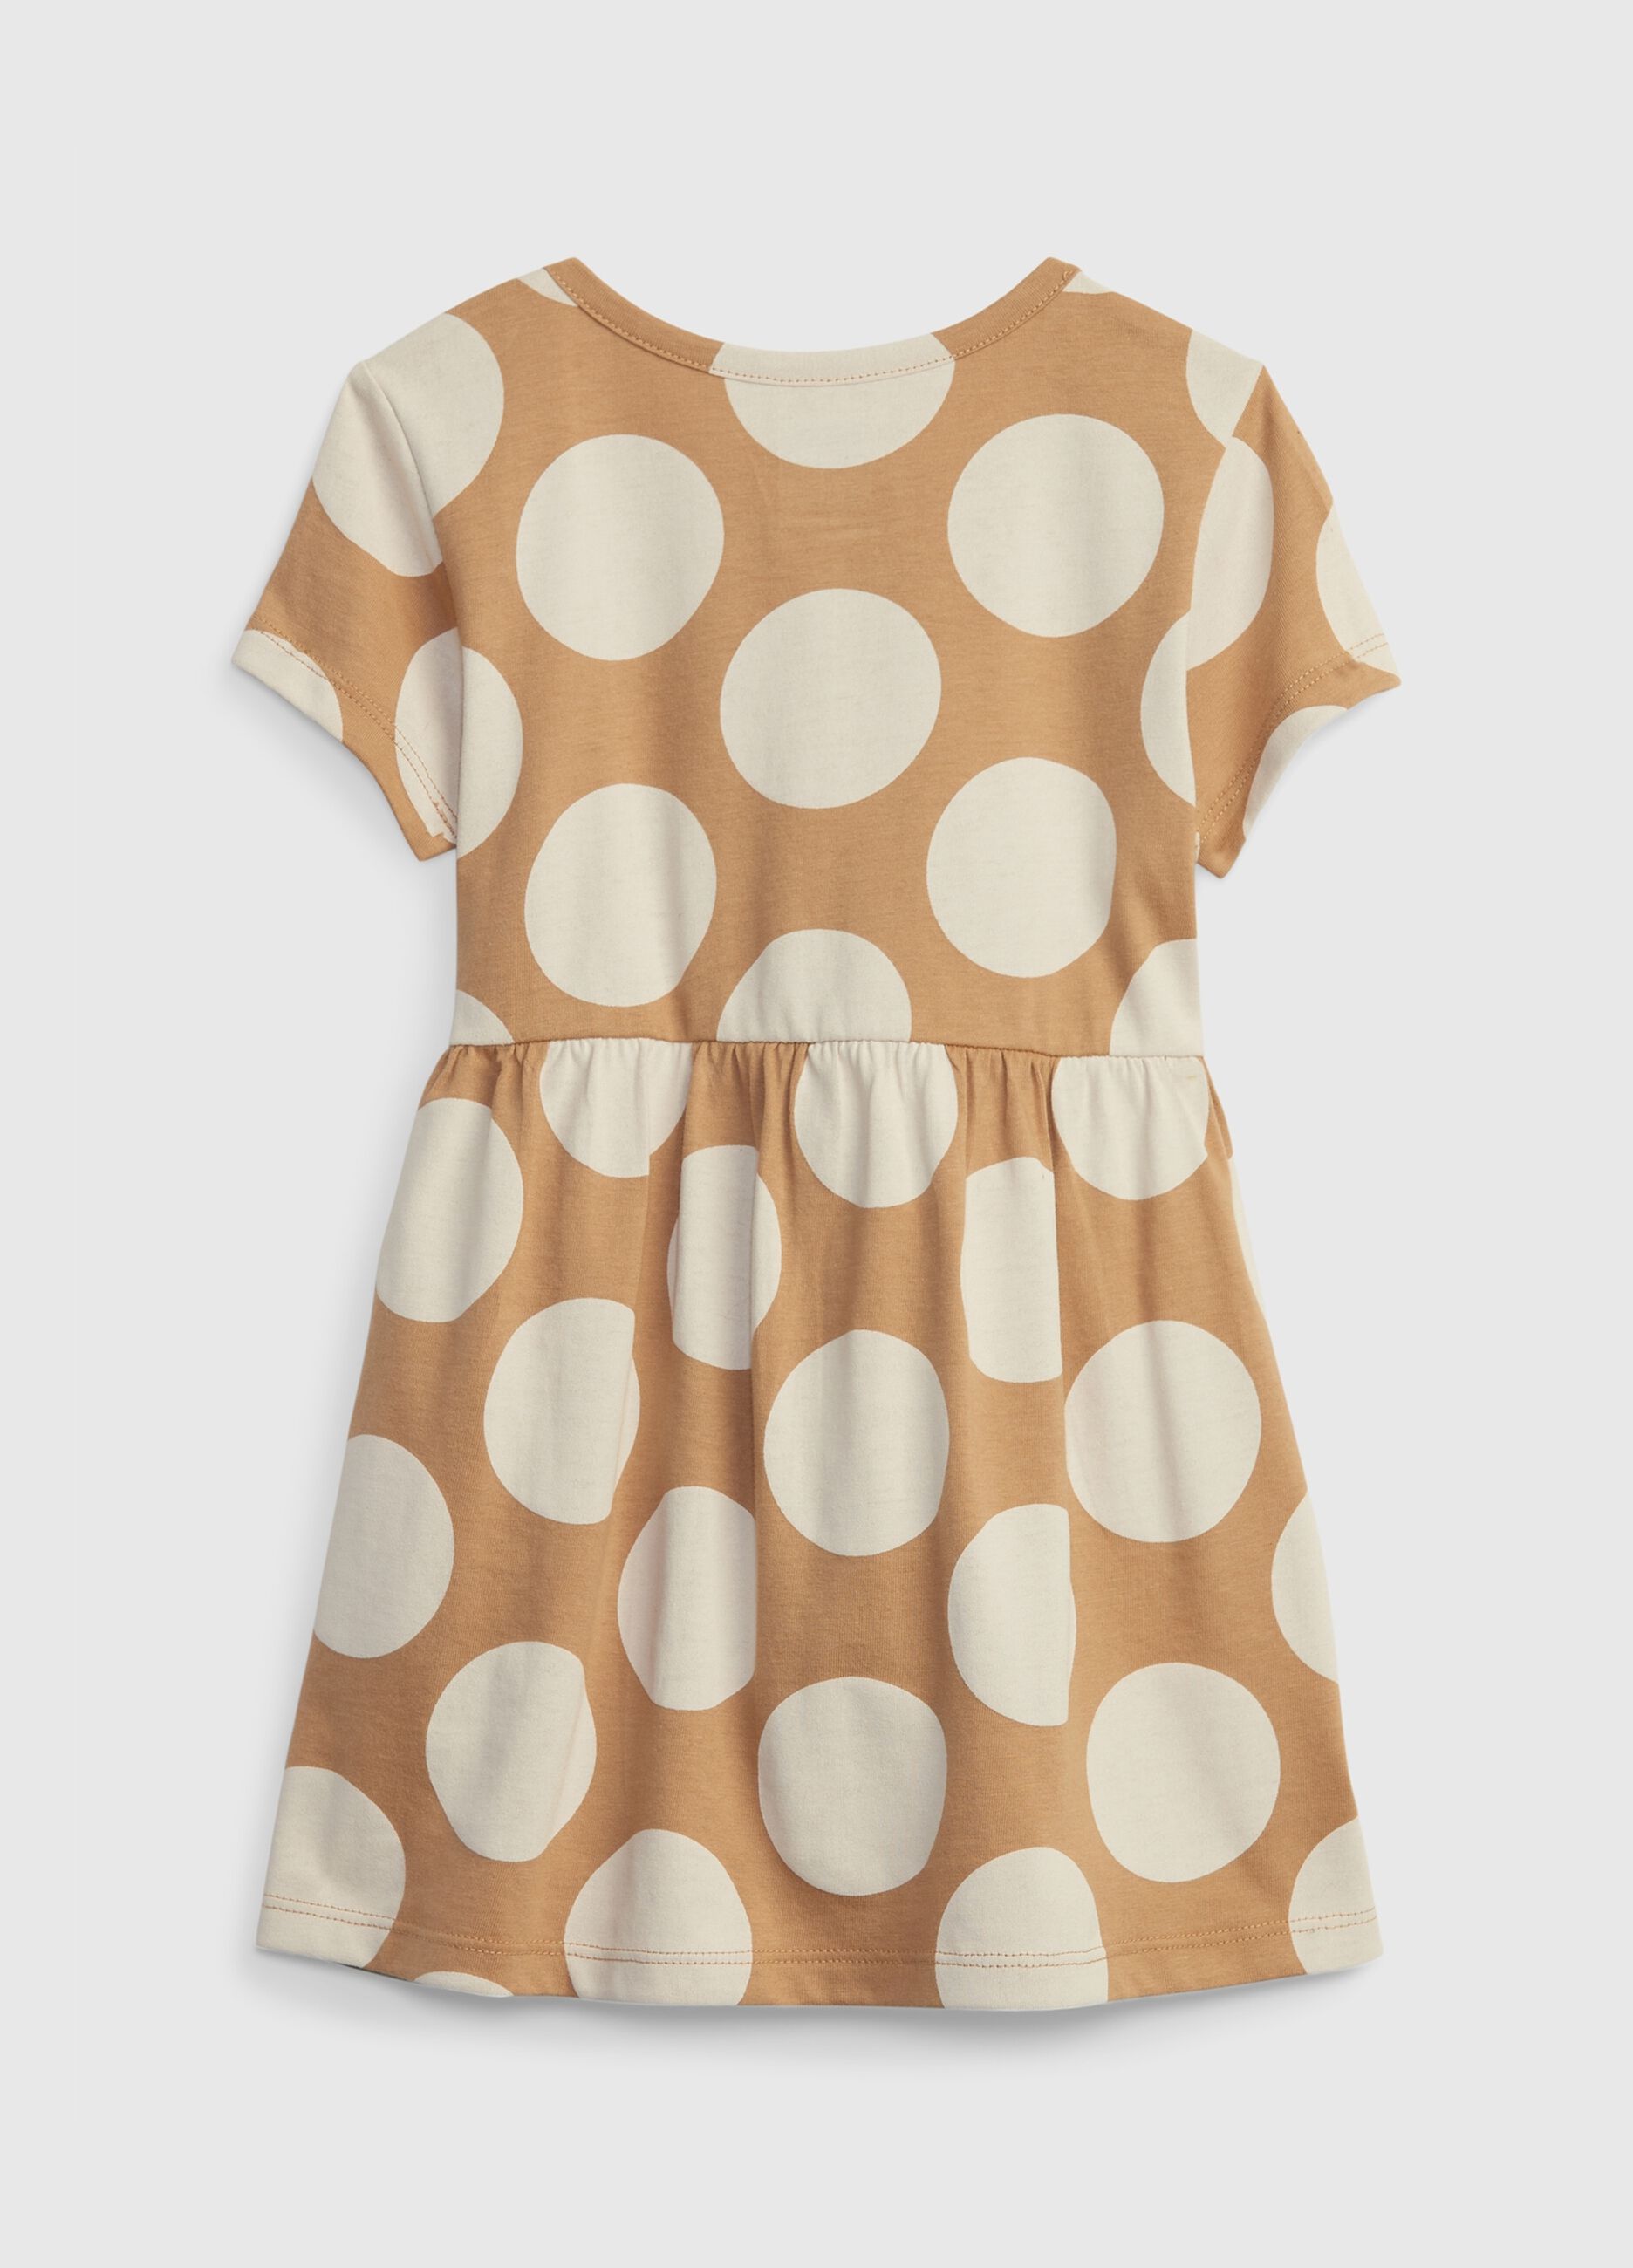 Dress with polka dot print